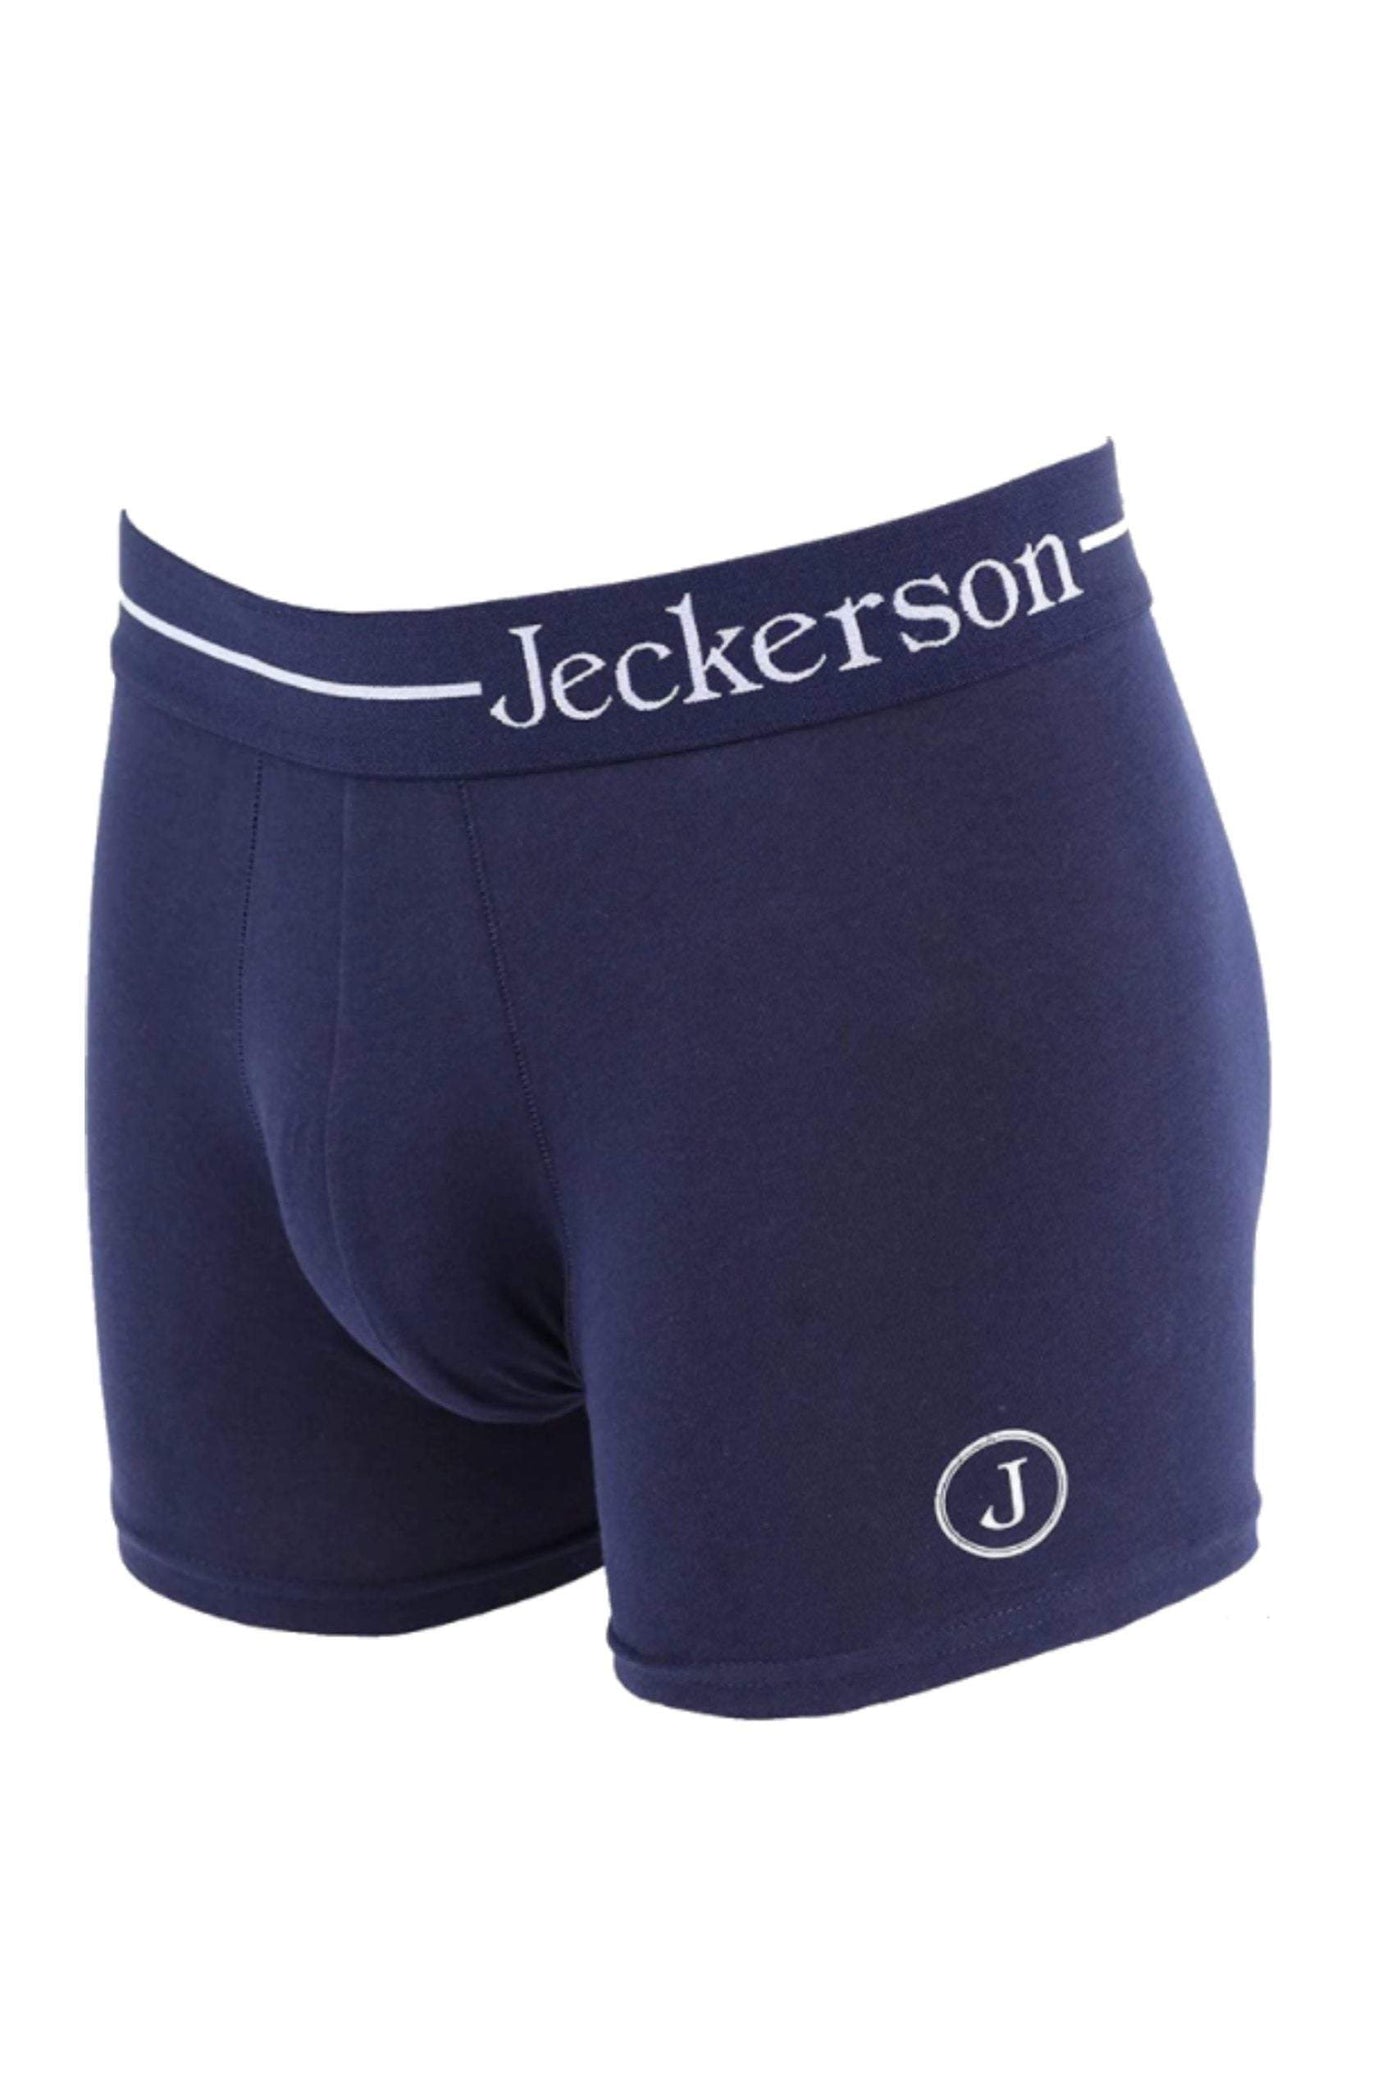 Jeckerson Blue Cotton Underwear #men, Blue, feed-1, Jeckerson, L, M, Underwear - Men - Clothing, XL, XXL at SEYMAYKA